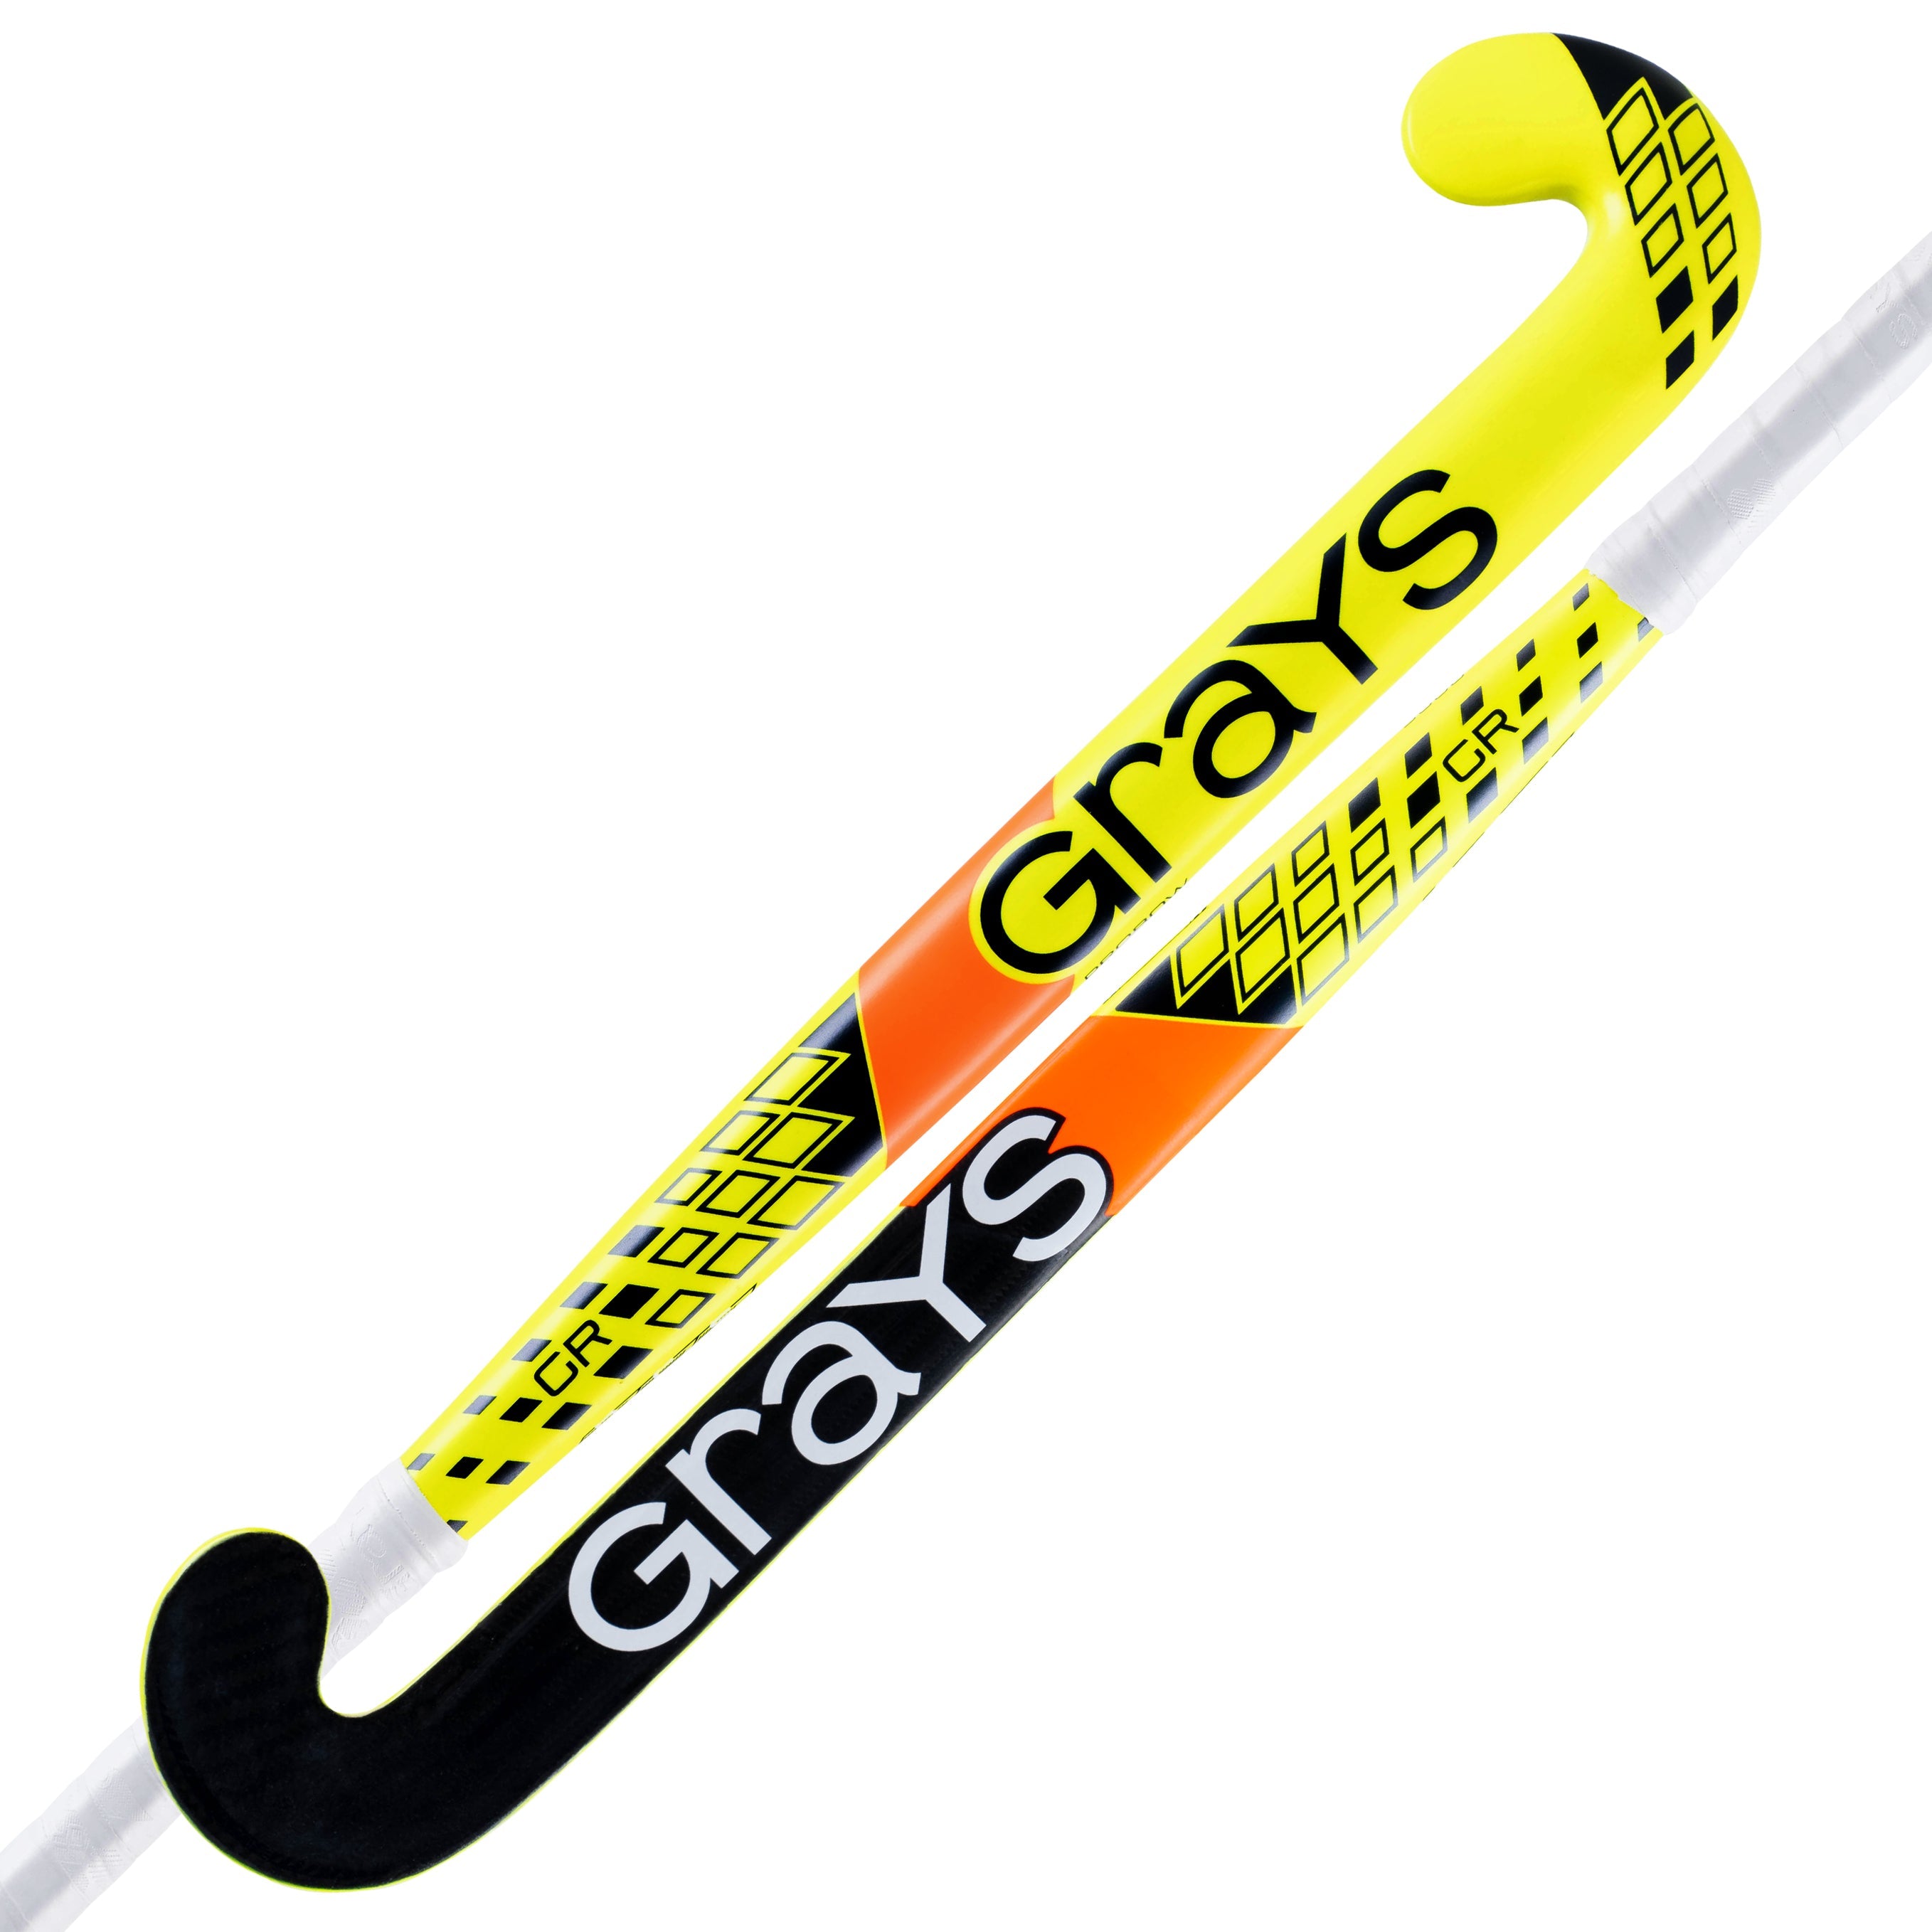 GR9000 Probow Composite Hockey Stick